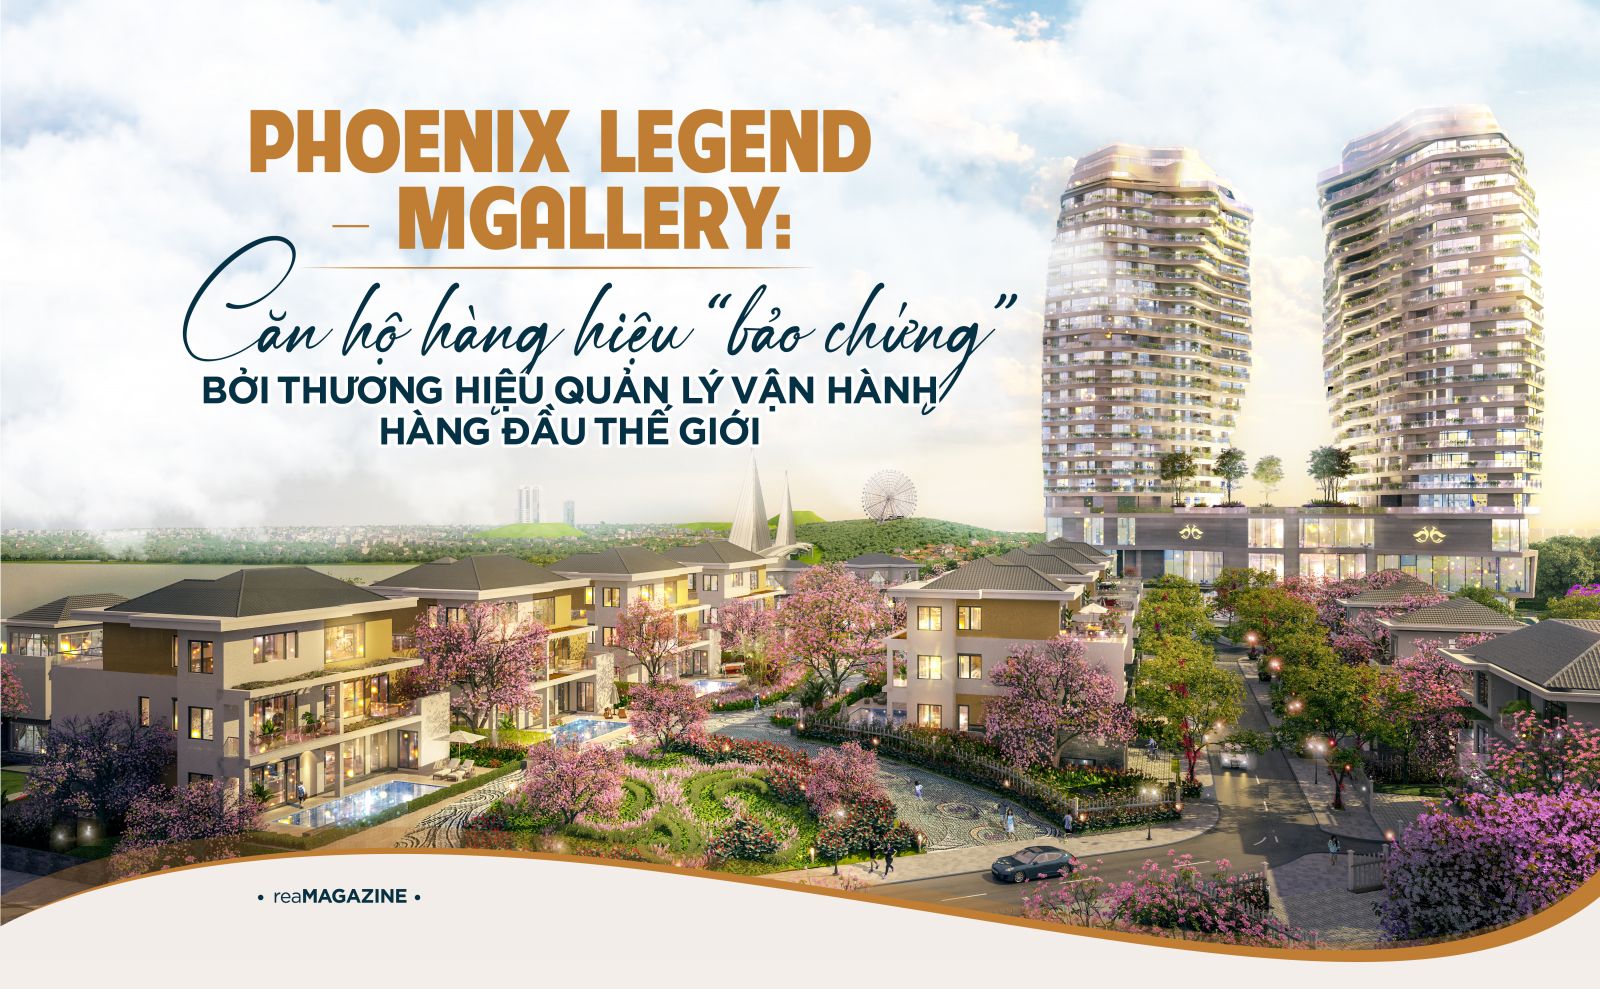 Phoenix Legend – MGallery: căn hộ hàng hiệu “bảo chứng” bởi thương hiệu quản lý vận hành hàng đầu thế giới